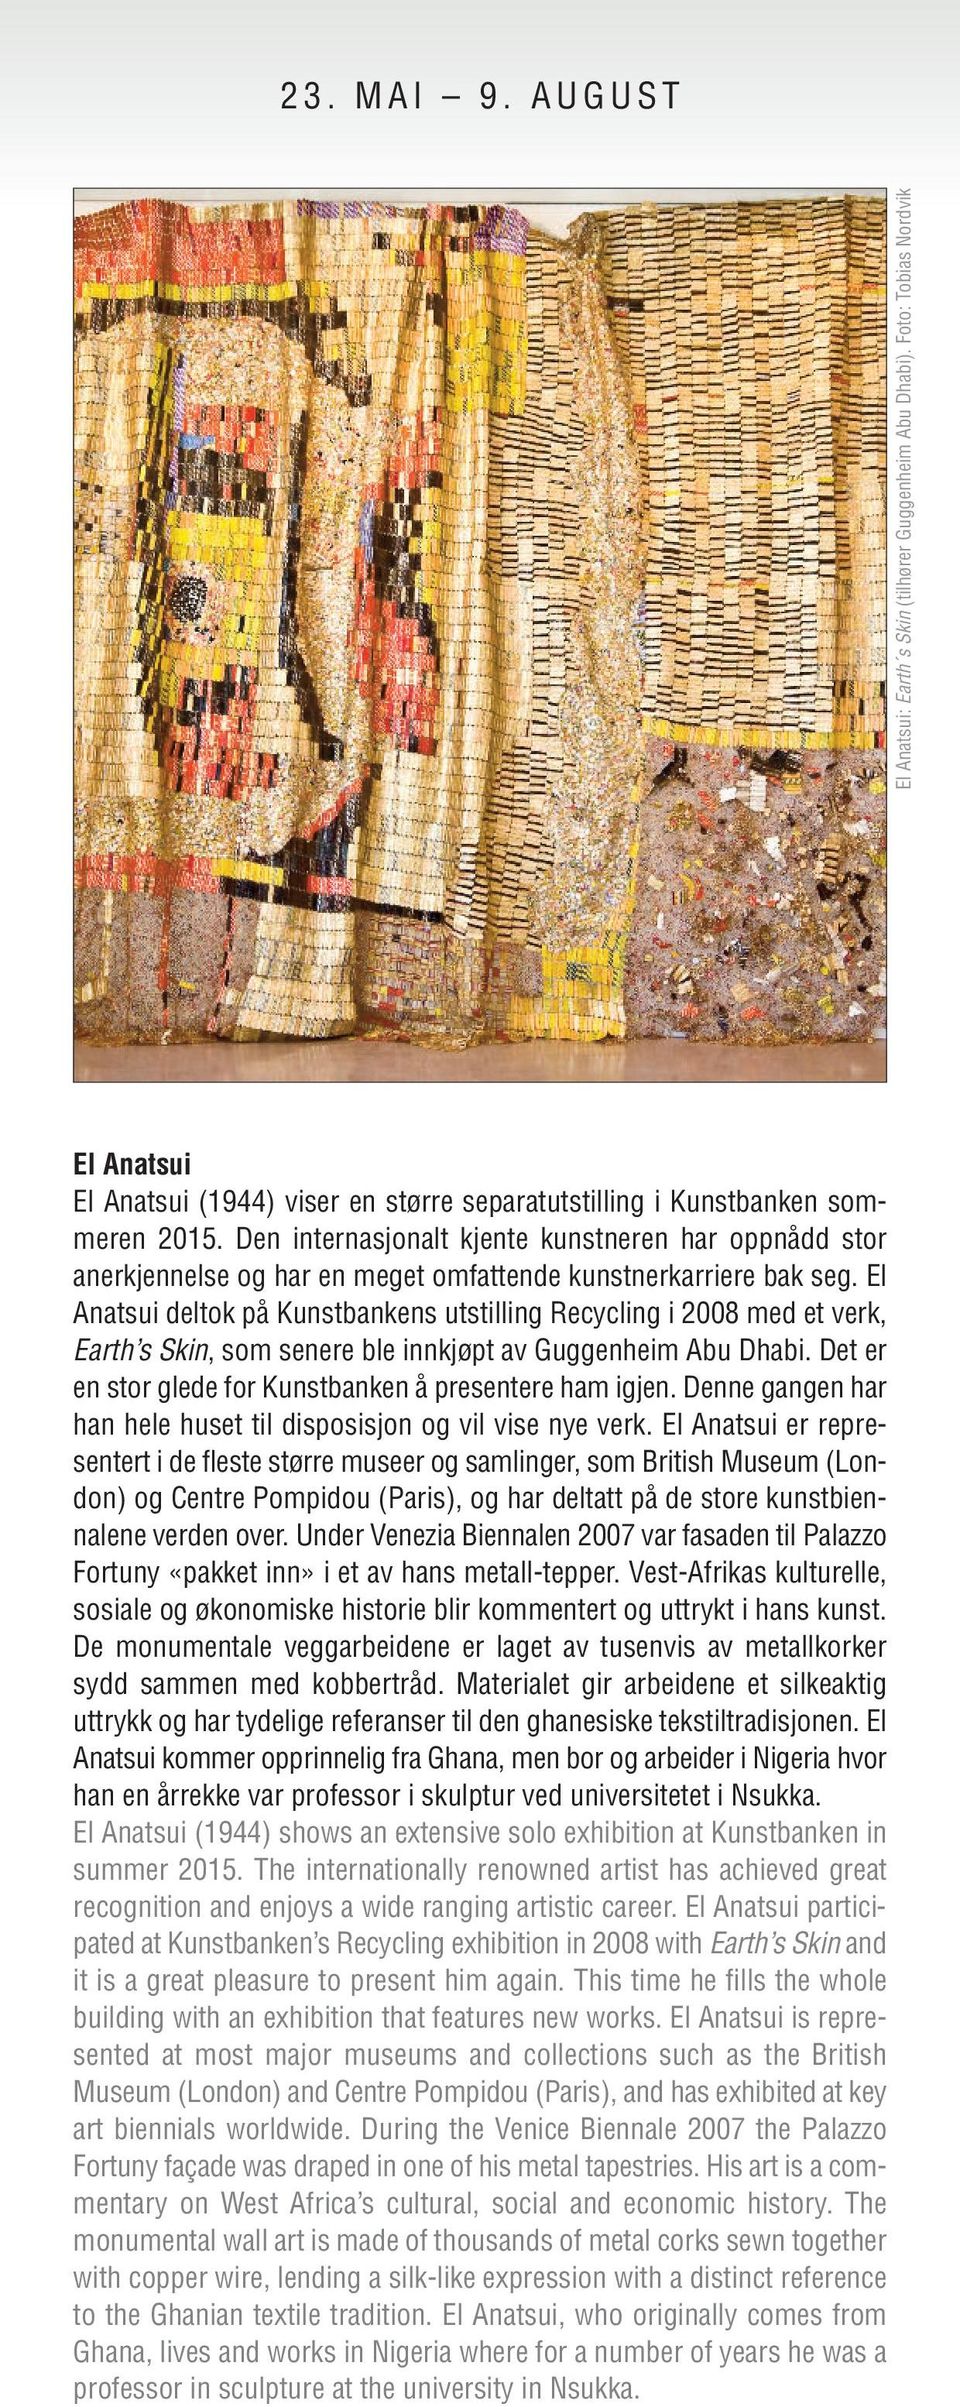 El Anatsui deltok på Kunstbankens utstilling Recycling i 2008 med et verk, Earth s Skin, som senere ble innkjøpt av Guggenheim Abu Dhabi. Det er en stor glede for Kunstbanken å presentere ham igjen.